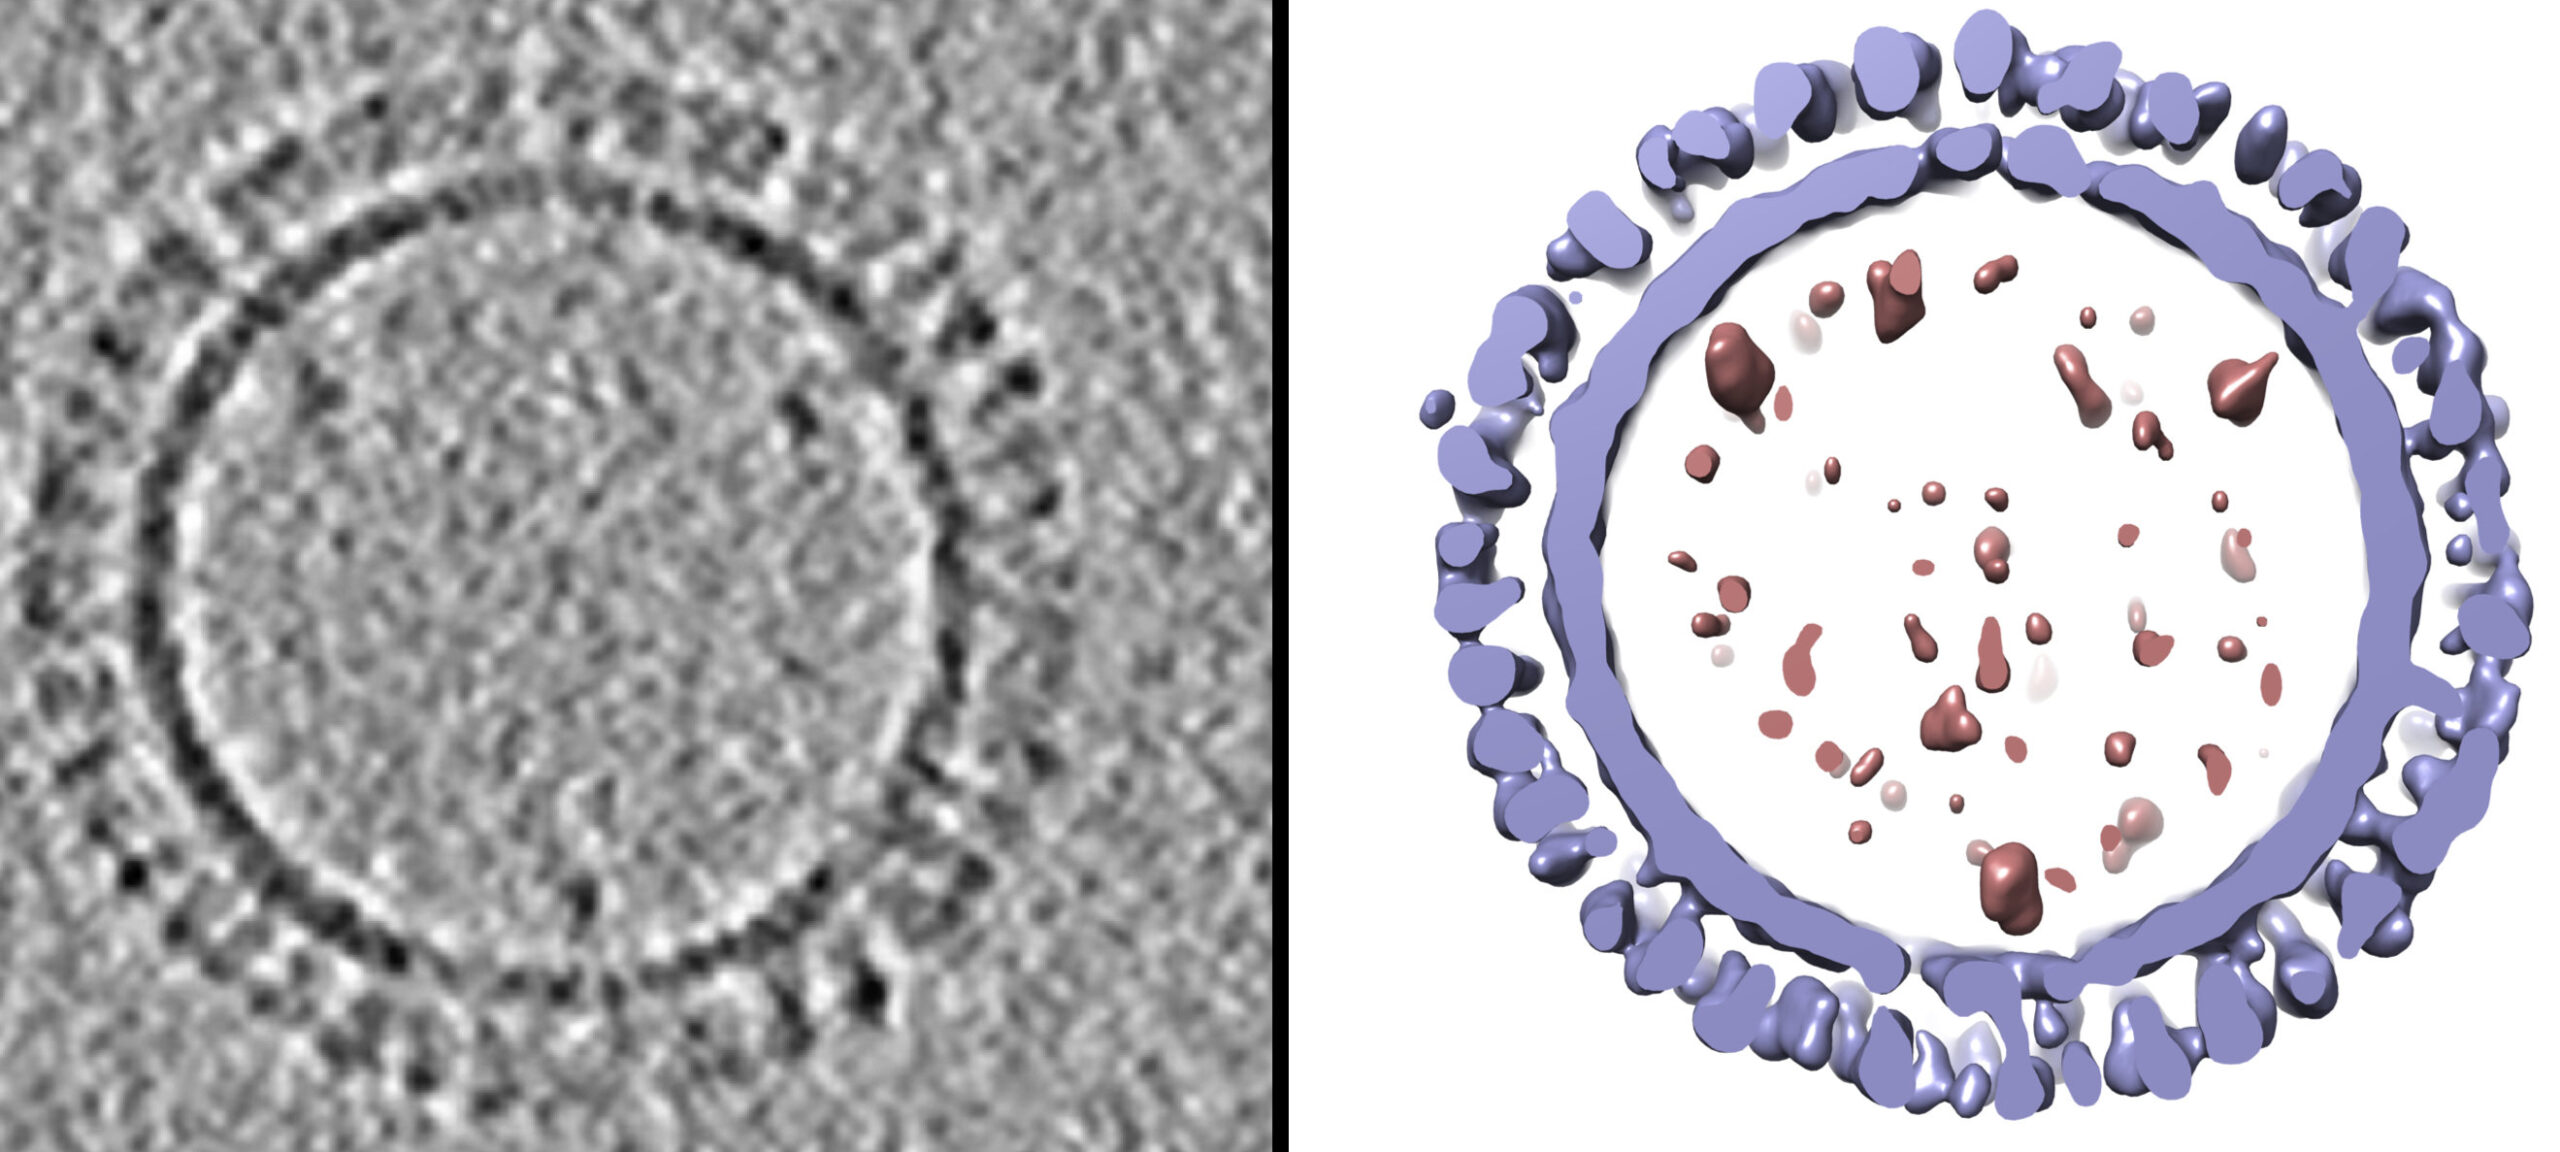 Δημιουργήθηκε δομή 3-D των σωματιδίων τύπου ιού της γρίπης του 1918